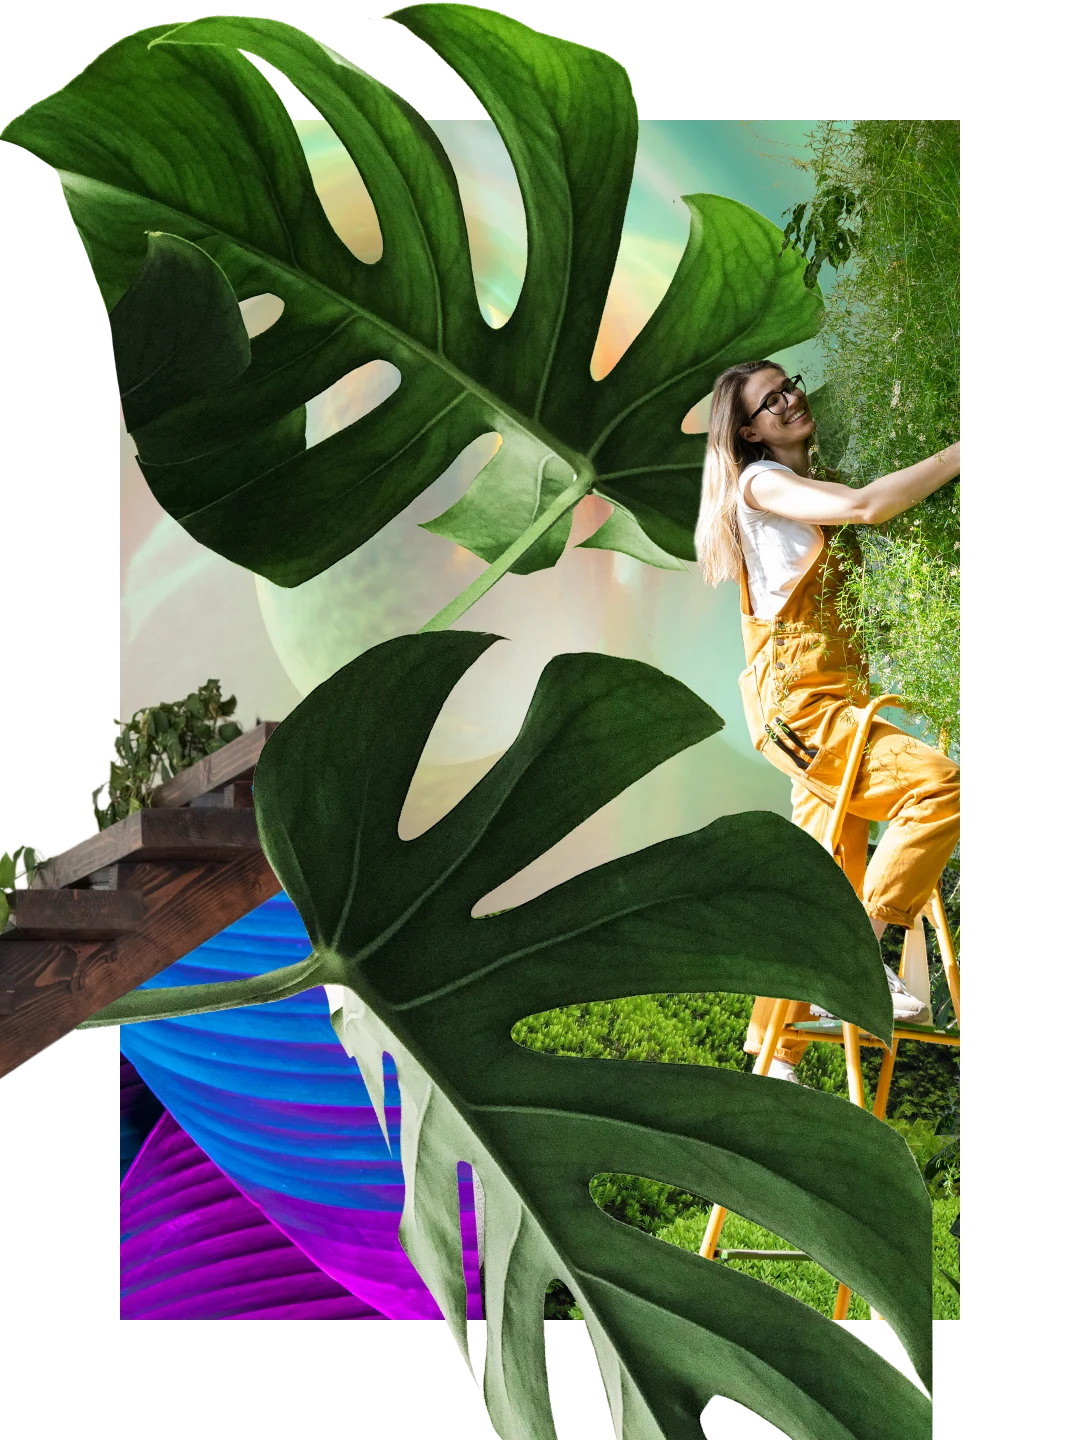 Collage de plantes. Deux grandes feuilles de monstera. En arrière-plan, escalier avec du feuillage. Femme blanche en salopette jaune sur une échelle s'occupant d'une plante.
